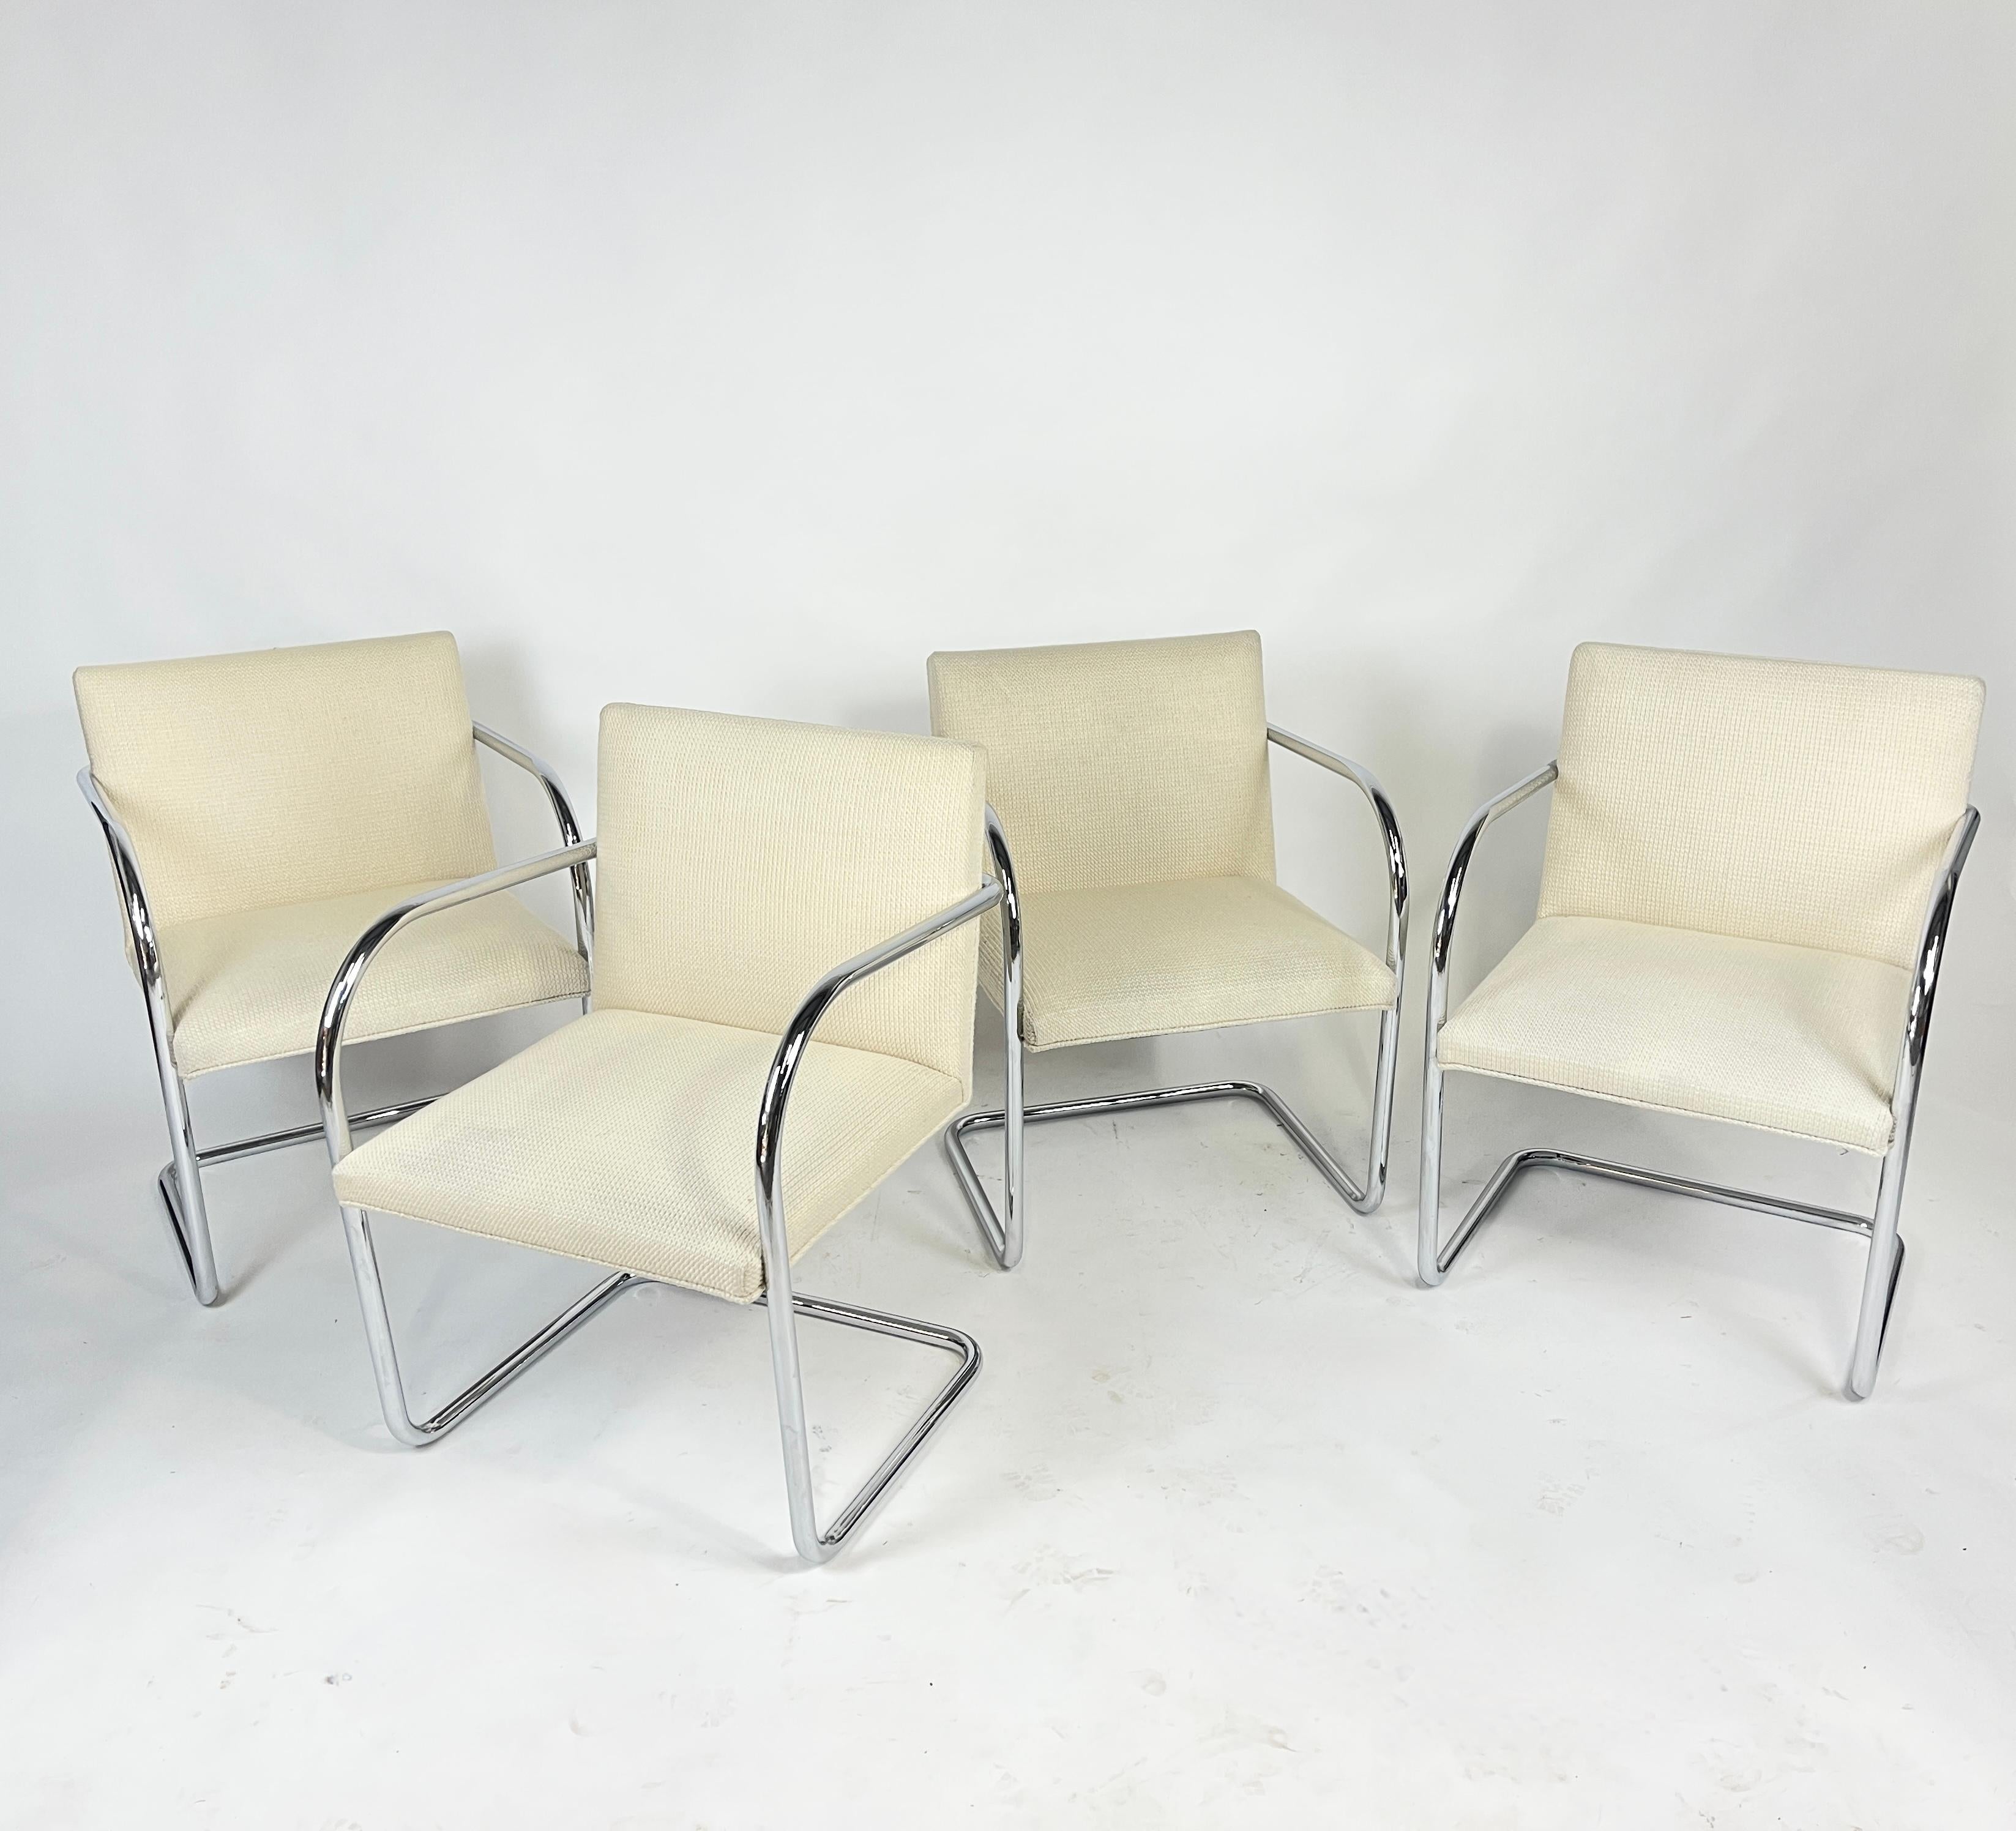 4 Stühle von Knoll Brno, entworfen von Mies Van der Rohe. Diese Stühle sind mit der Cato-Polsterung von Knoll gepolstert. Die Farbe ist 